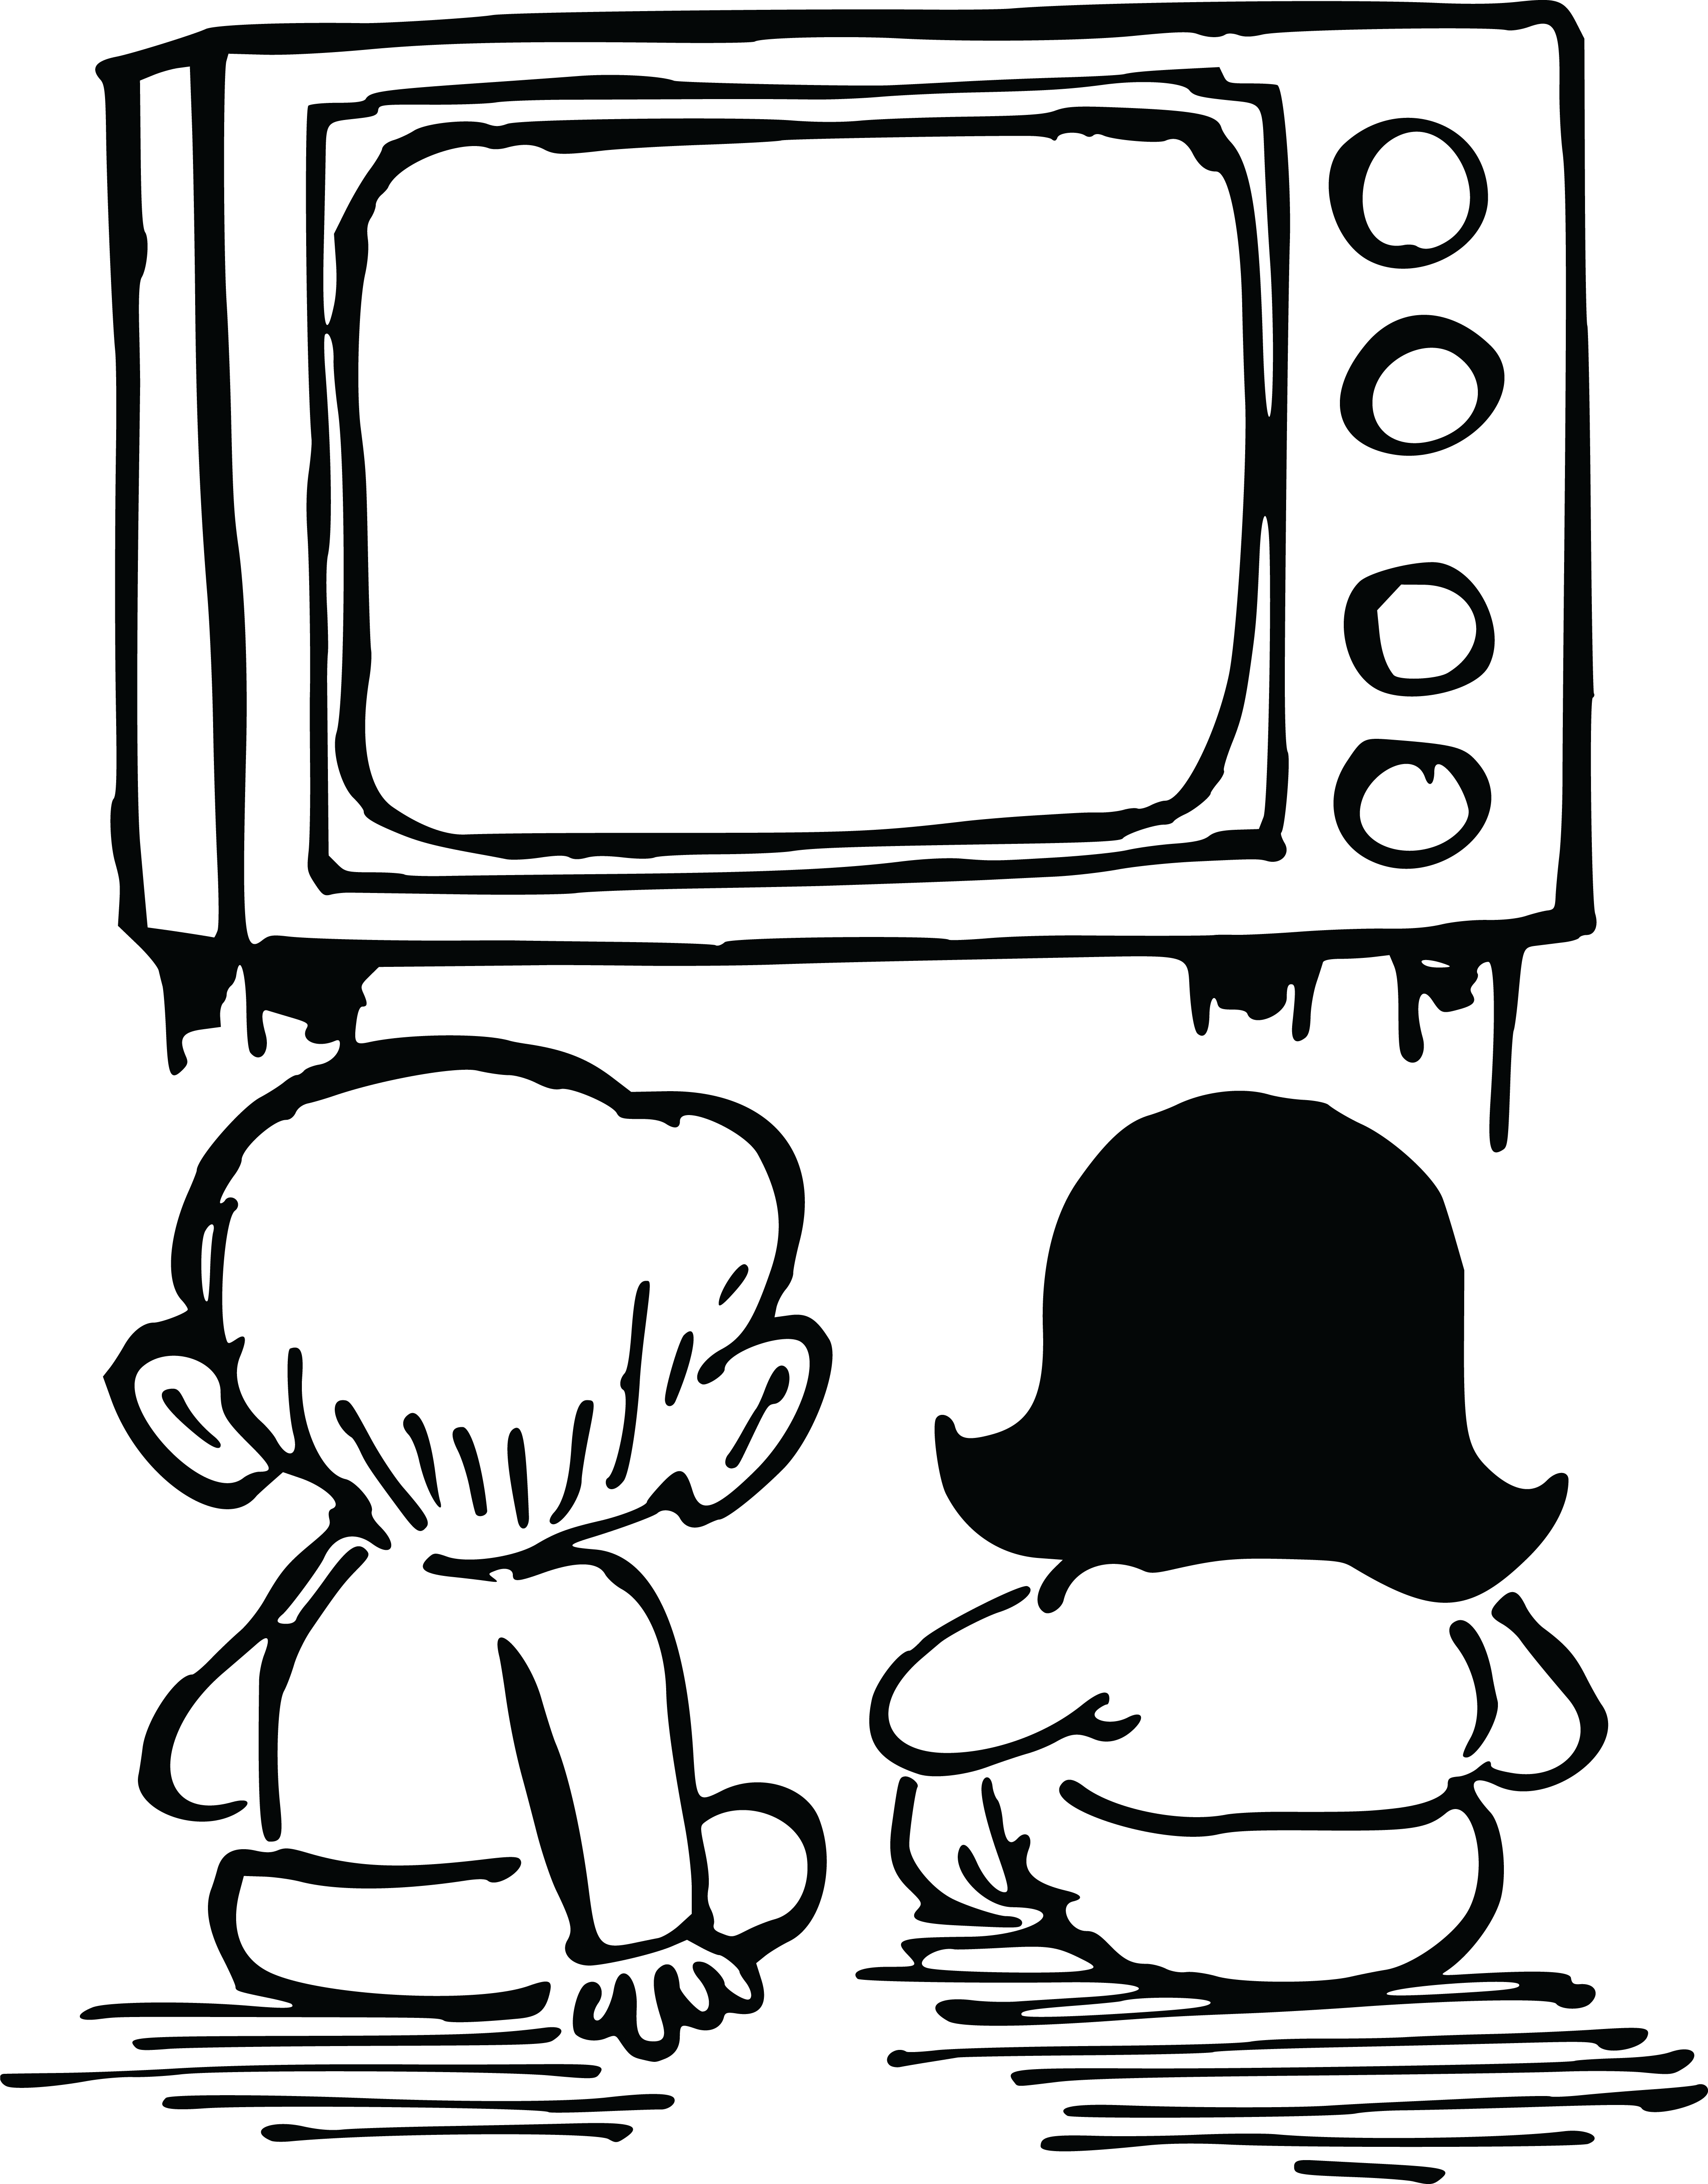 Телевизор - Телевизионный приёмник - ТВ-приемник - TV Receiver